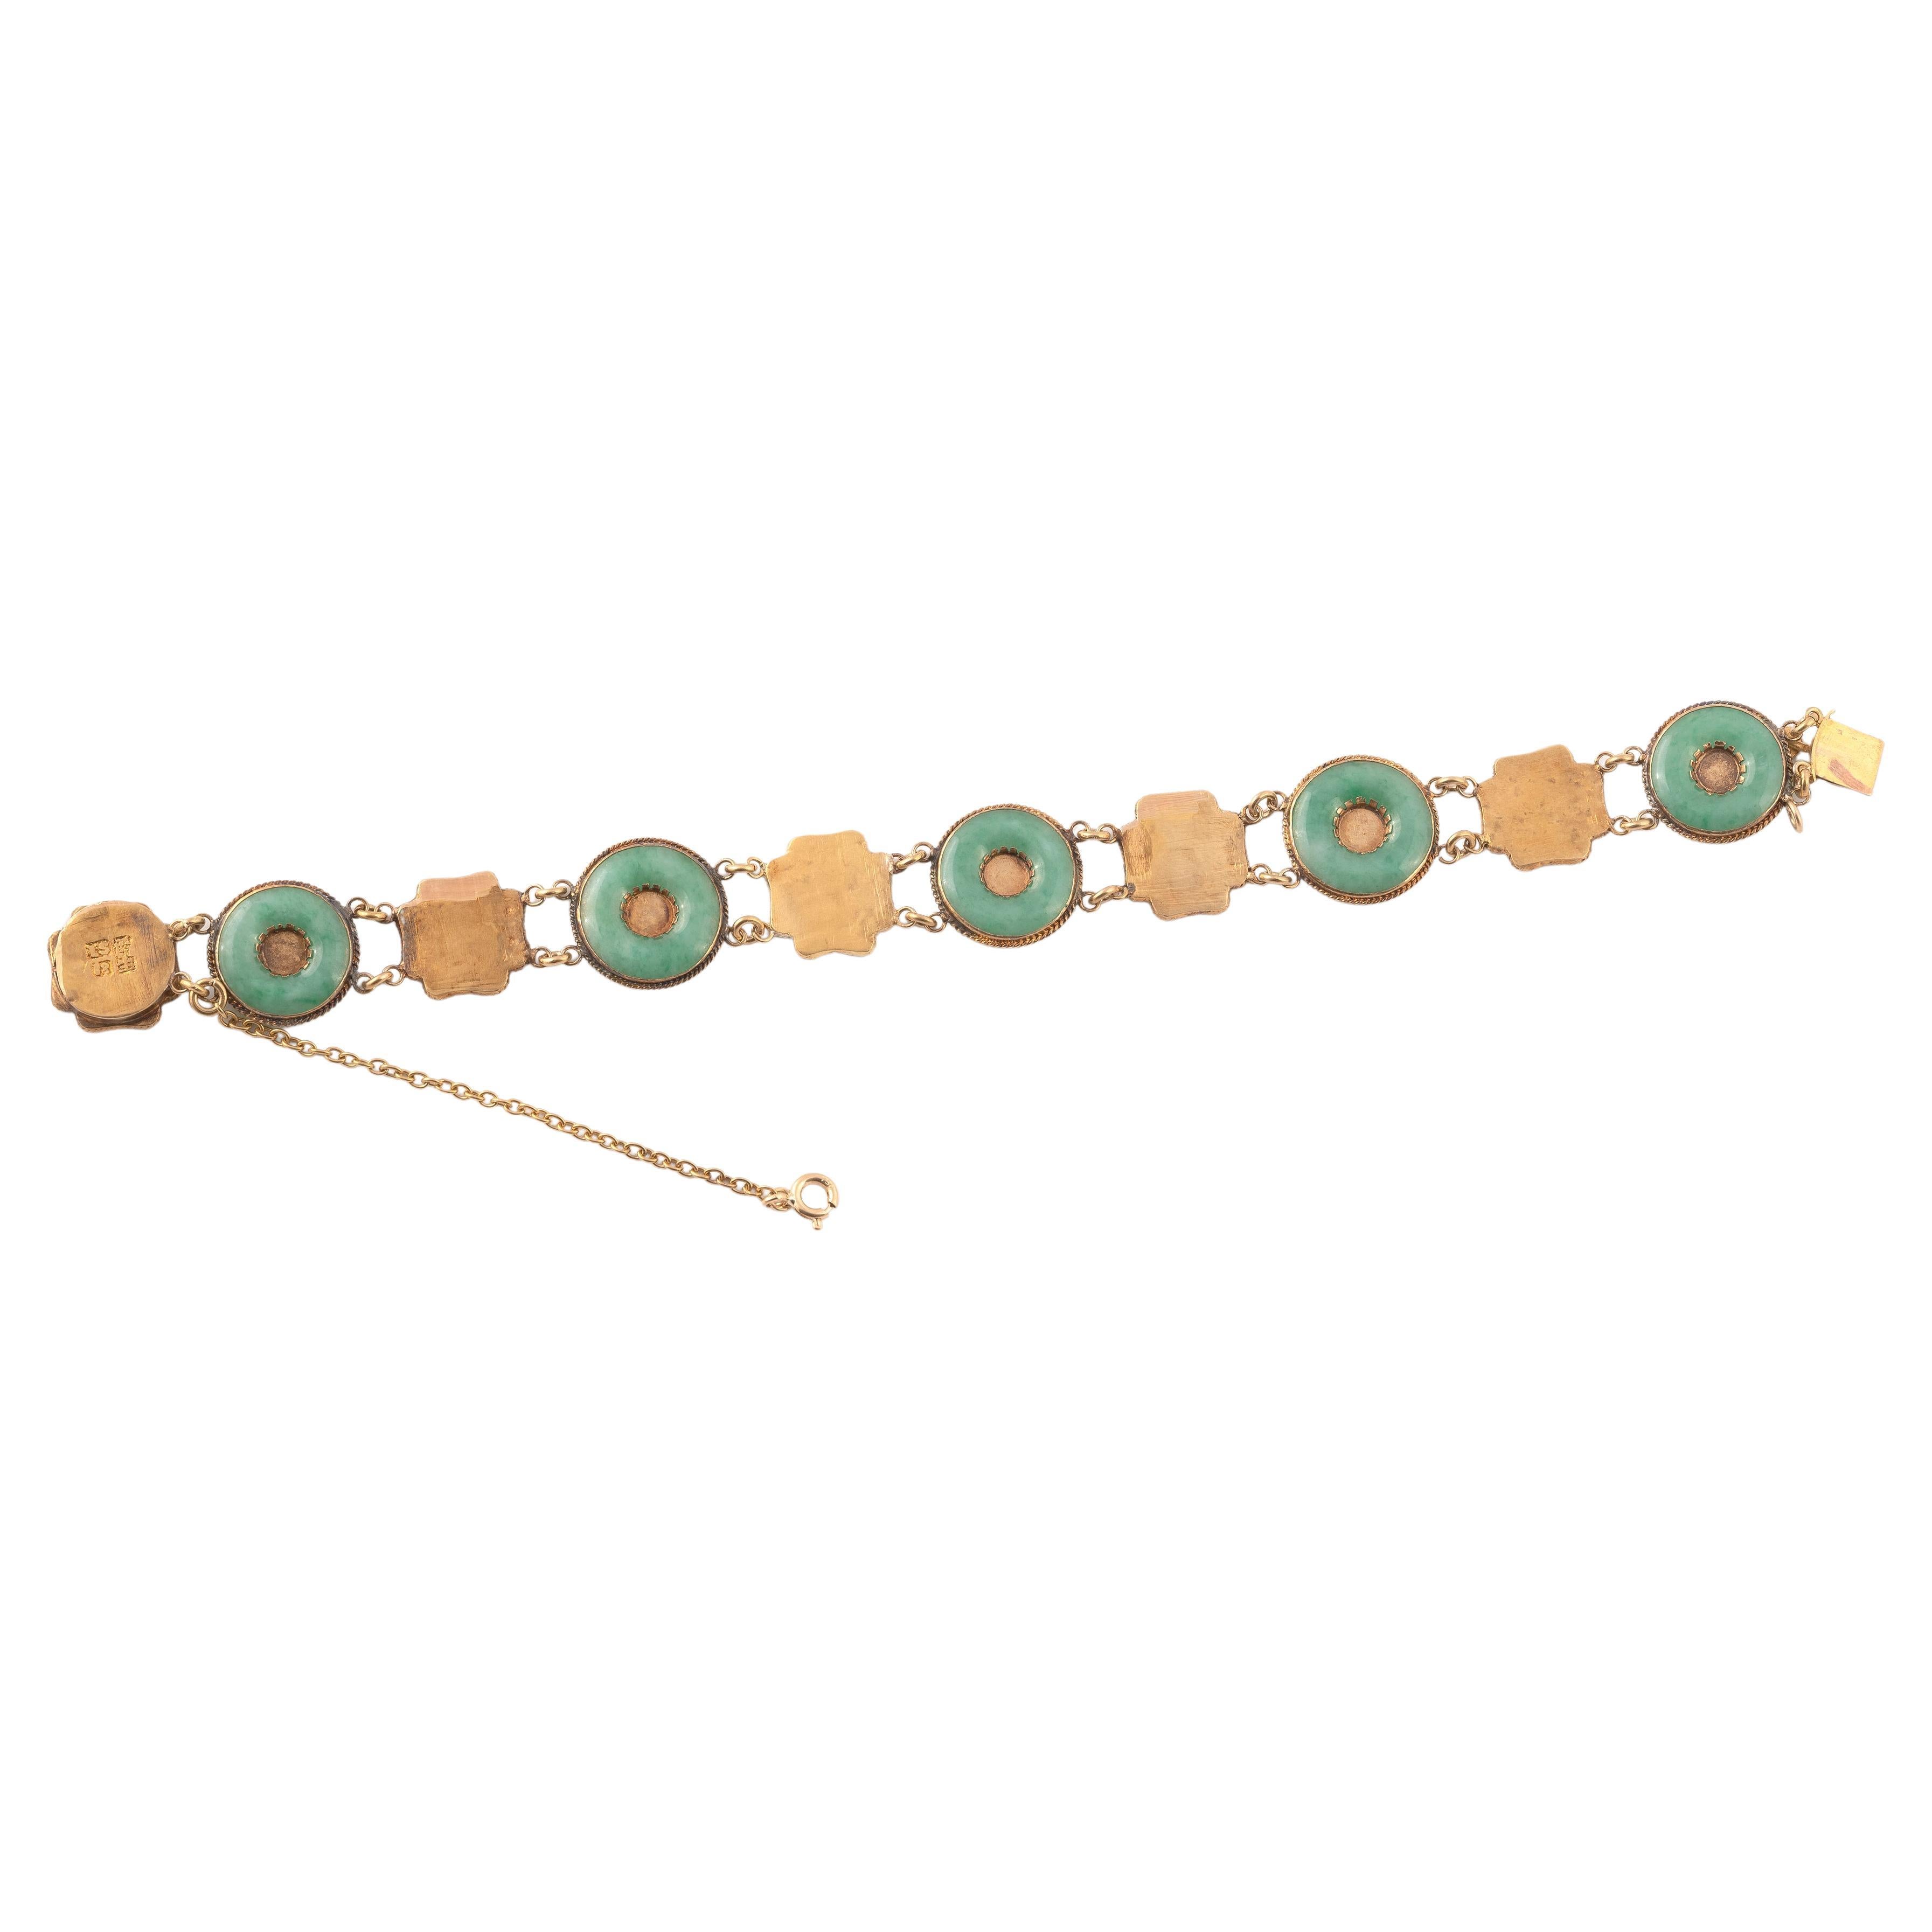 Bracelet souple, composé de disques en jade jadéite alternés avec des maillons quadrilobés en or jaune guilloché surmontés de caractères chinois. Longueur : 19.5cm. Poids : 14,8 g.